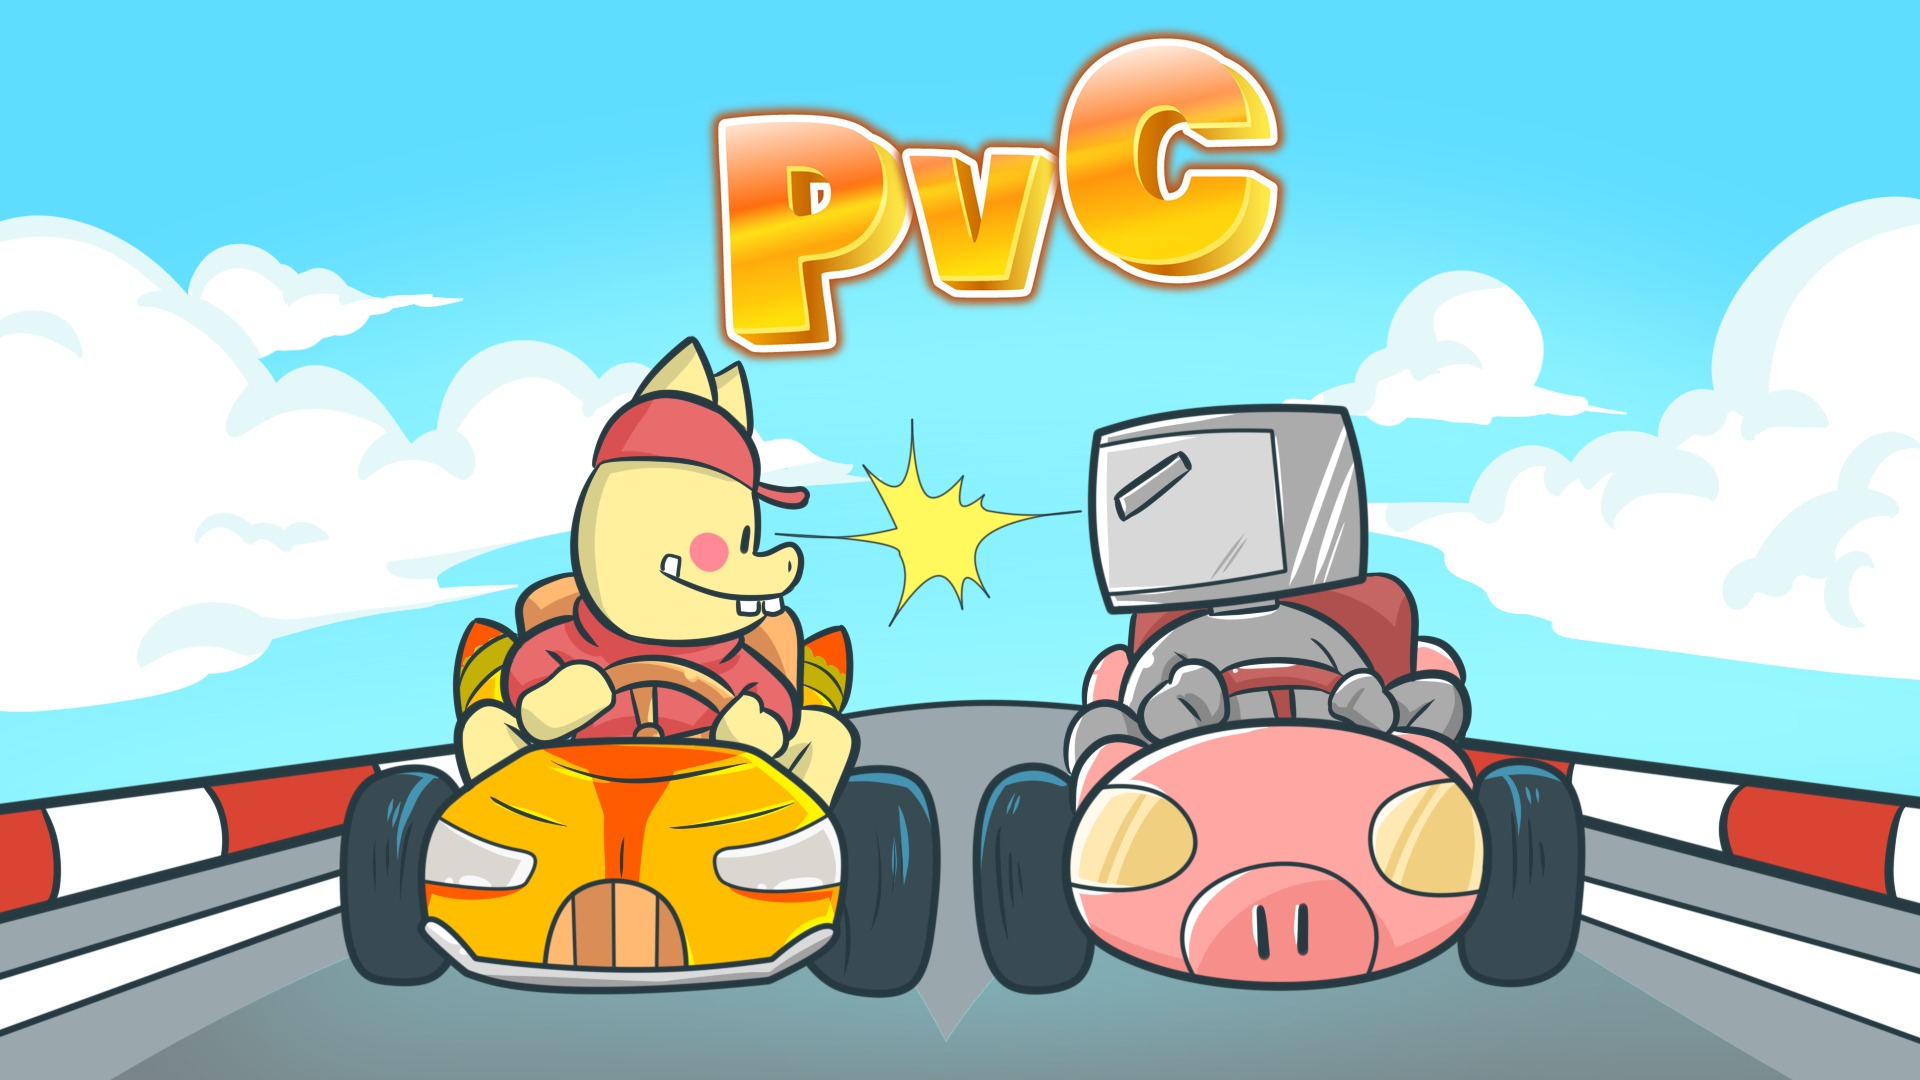 PvC dragon kart